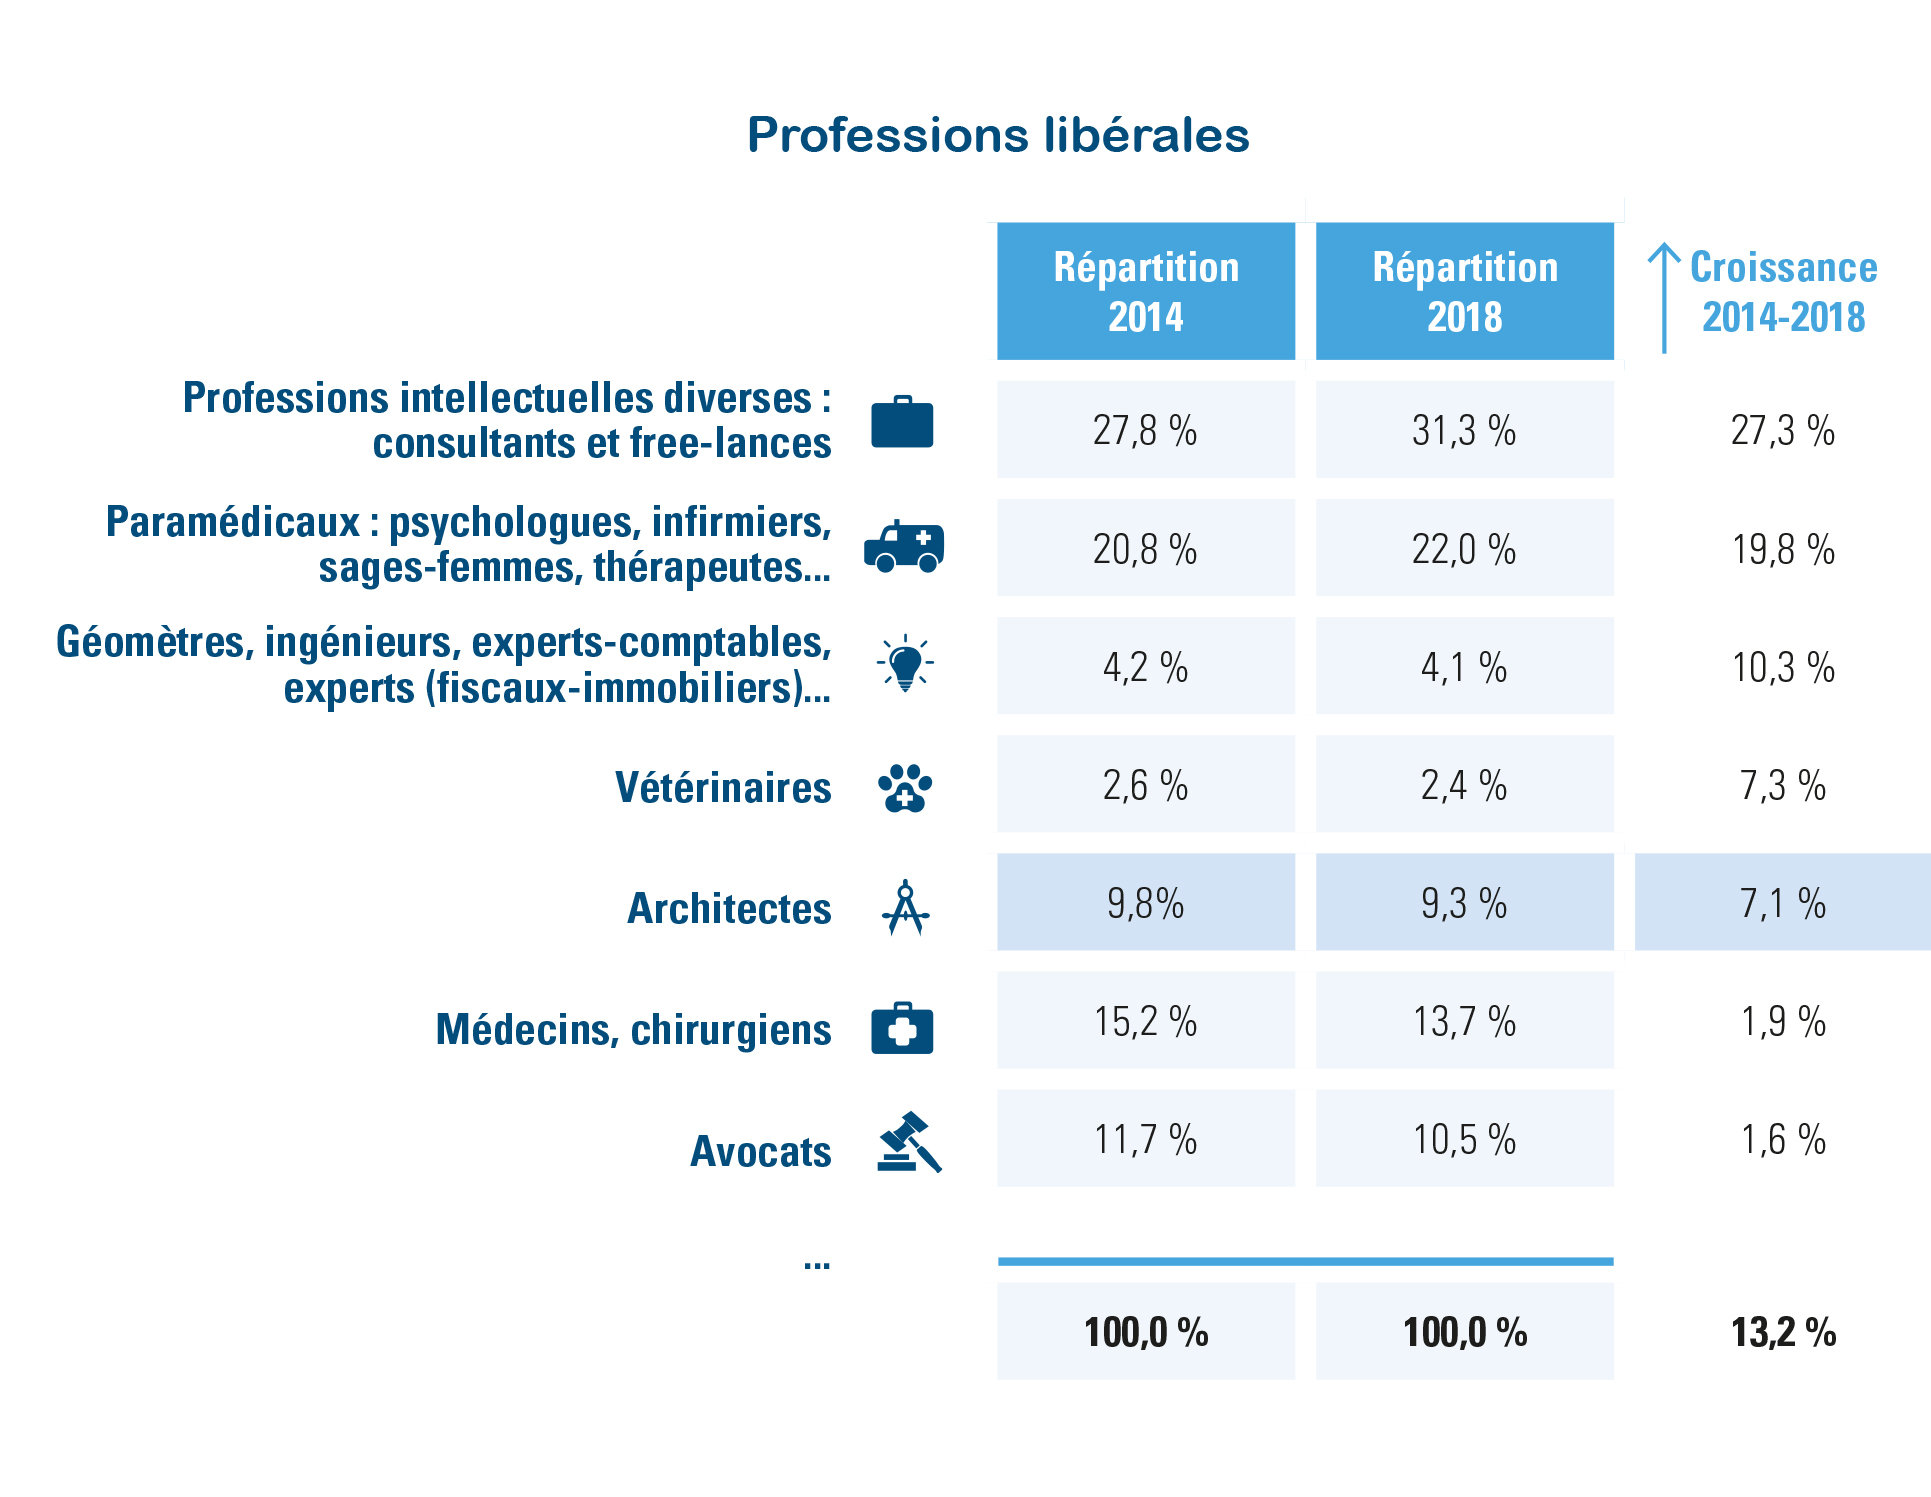 Professions libérales, répartition et croissances 2014-2018